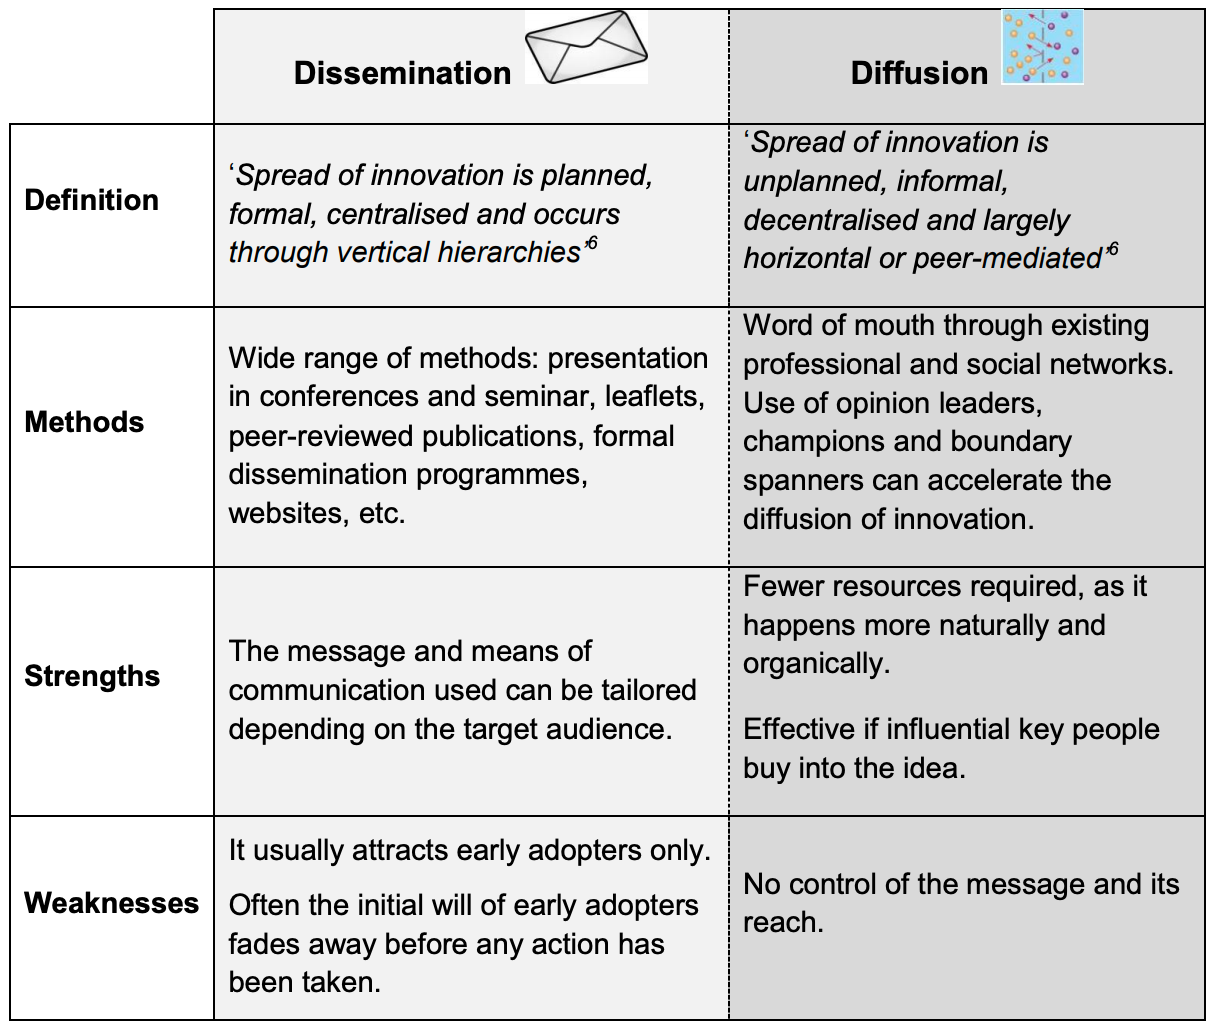 Dissemination vs diffusion